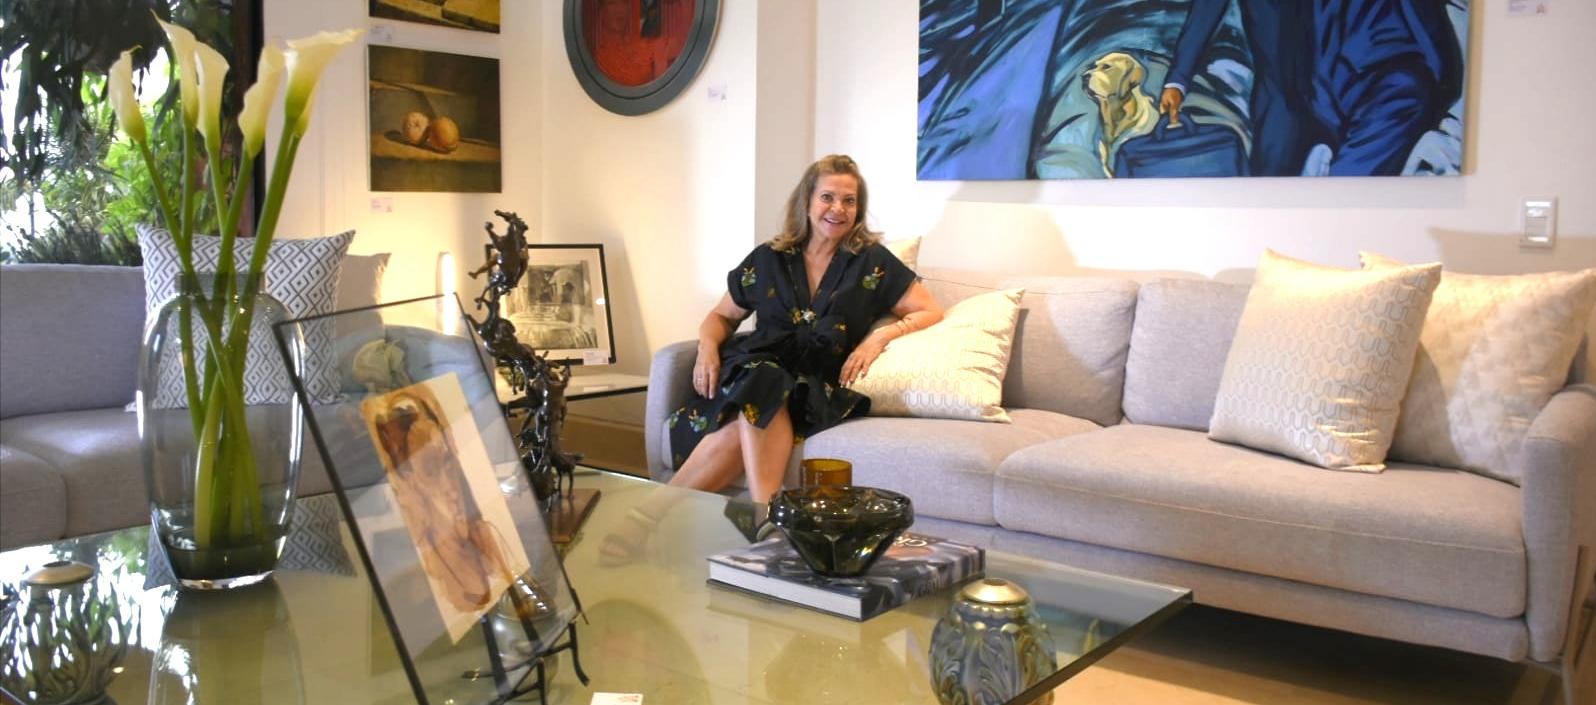 Cielo Támara, directora de Musa Galería de Arte, pionera en el Home Gallery en Barranquilla.